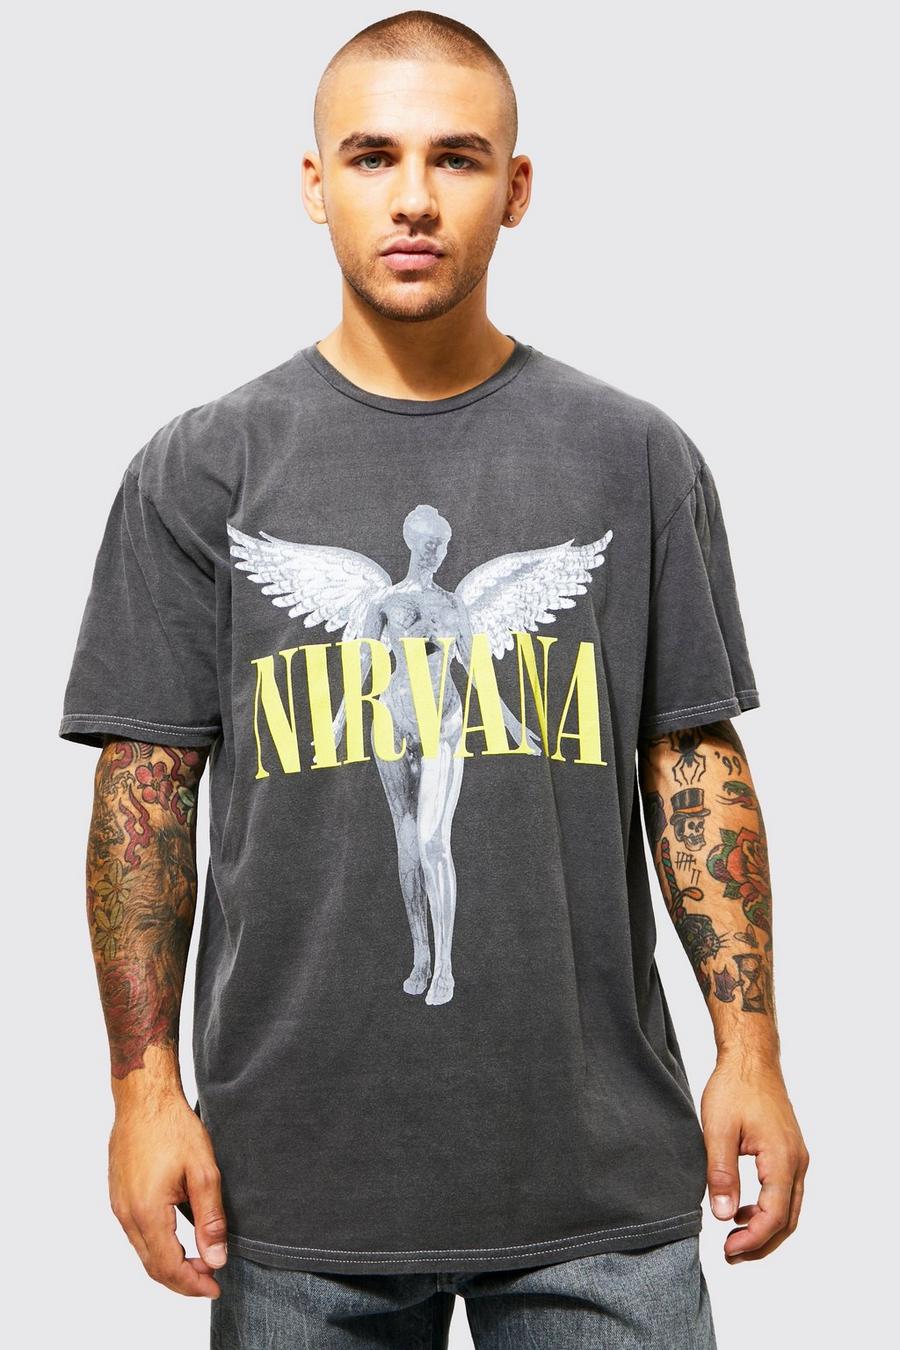 Charcoal grey Oversized Gebleekt Gelicenseerd Nirvana T-Shirt